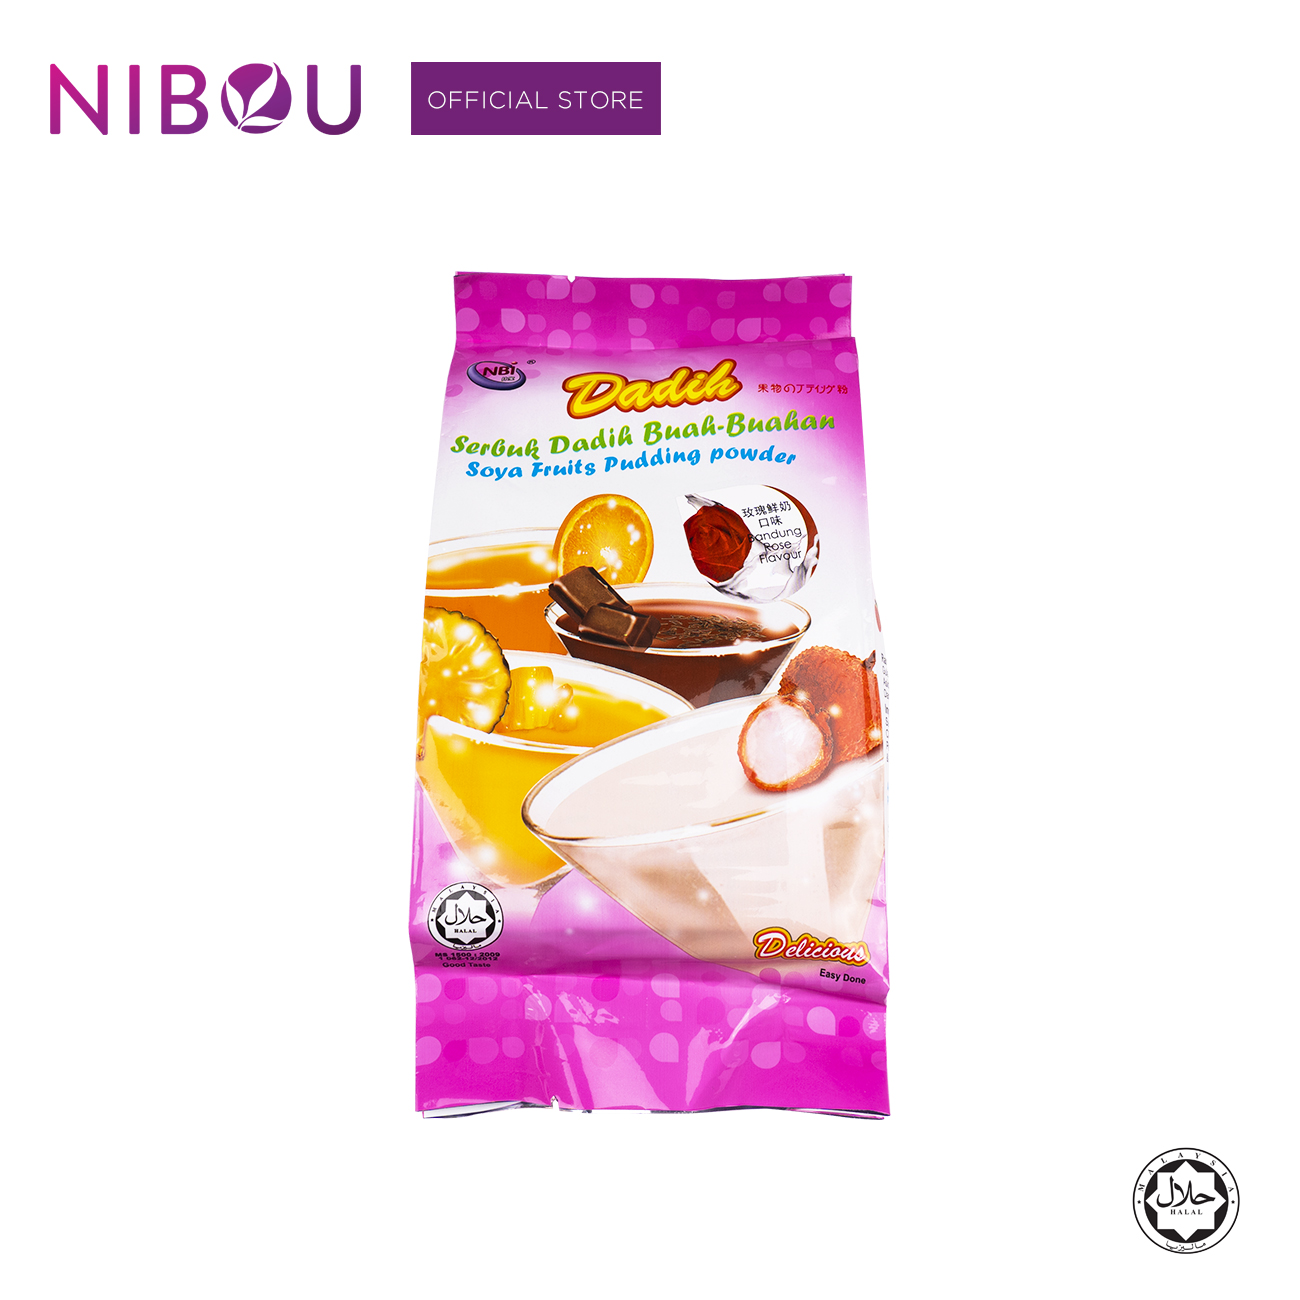 Nibou (NBI) DADIH Soya Fruits Pudding Bandung Rose Powder (380gm X 24)